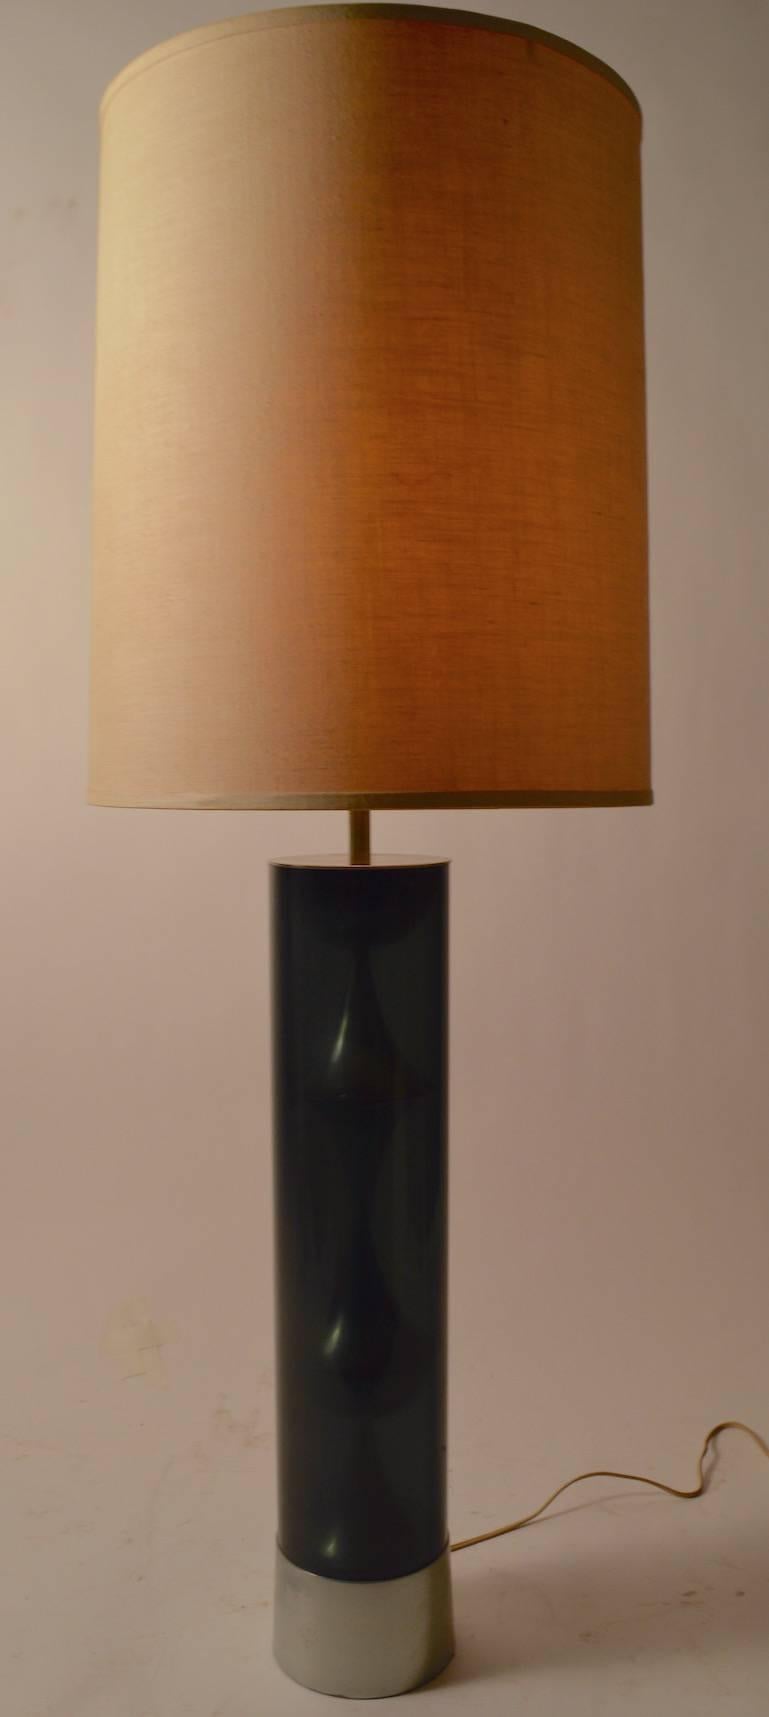 Cette lampe de table présente un tube en Lucite fumé foncé qui abrite un élément décoratif en chrome. La lampe comprenait l'abat-jour d'origine, qui présente une usure mineure. Fonctionnement, état original et propre, 23